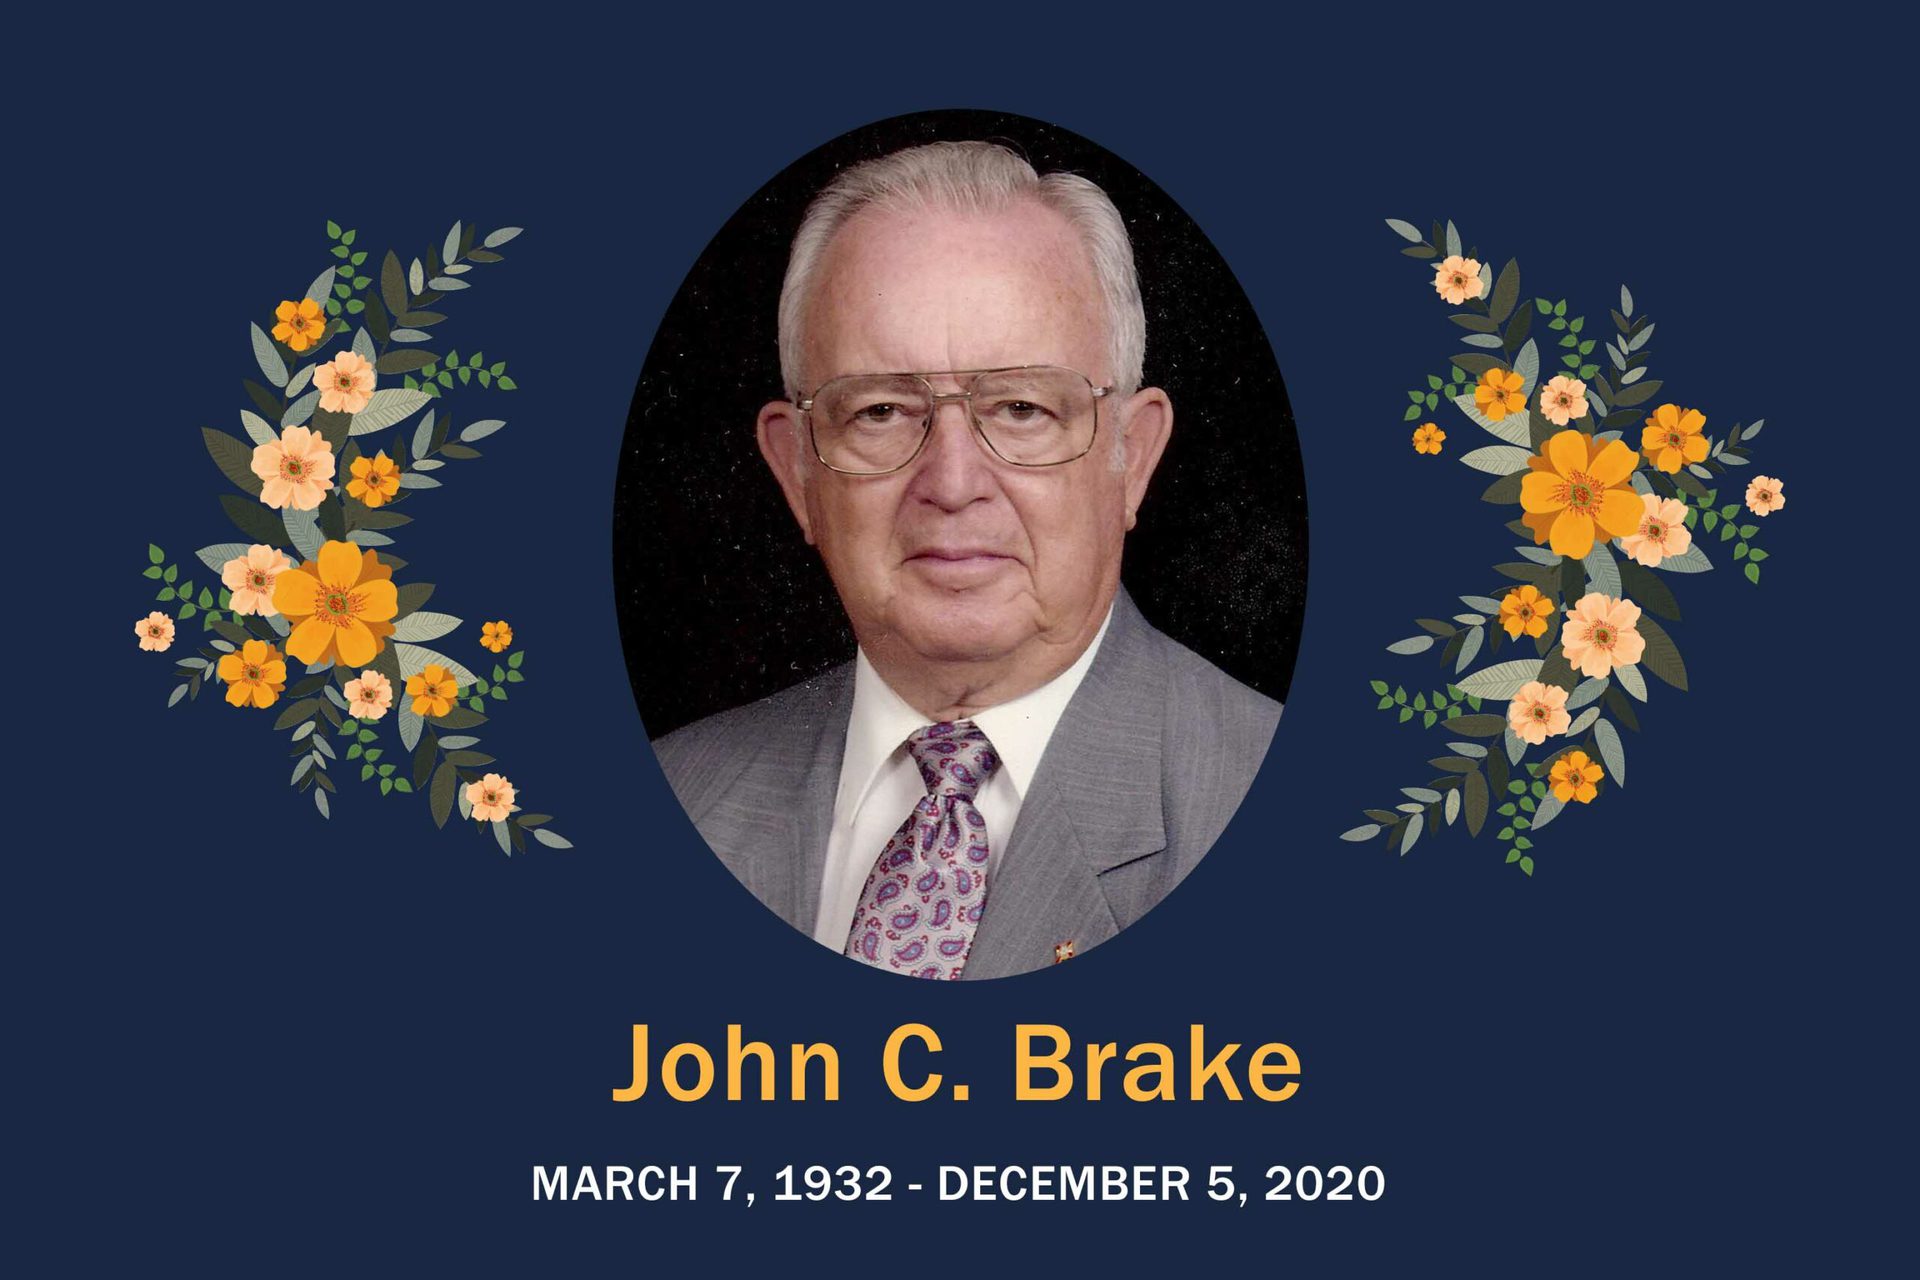 Obituary John Brake